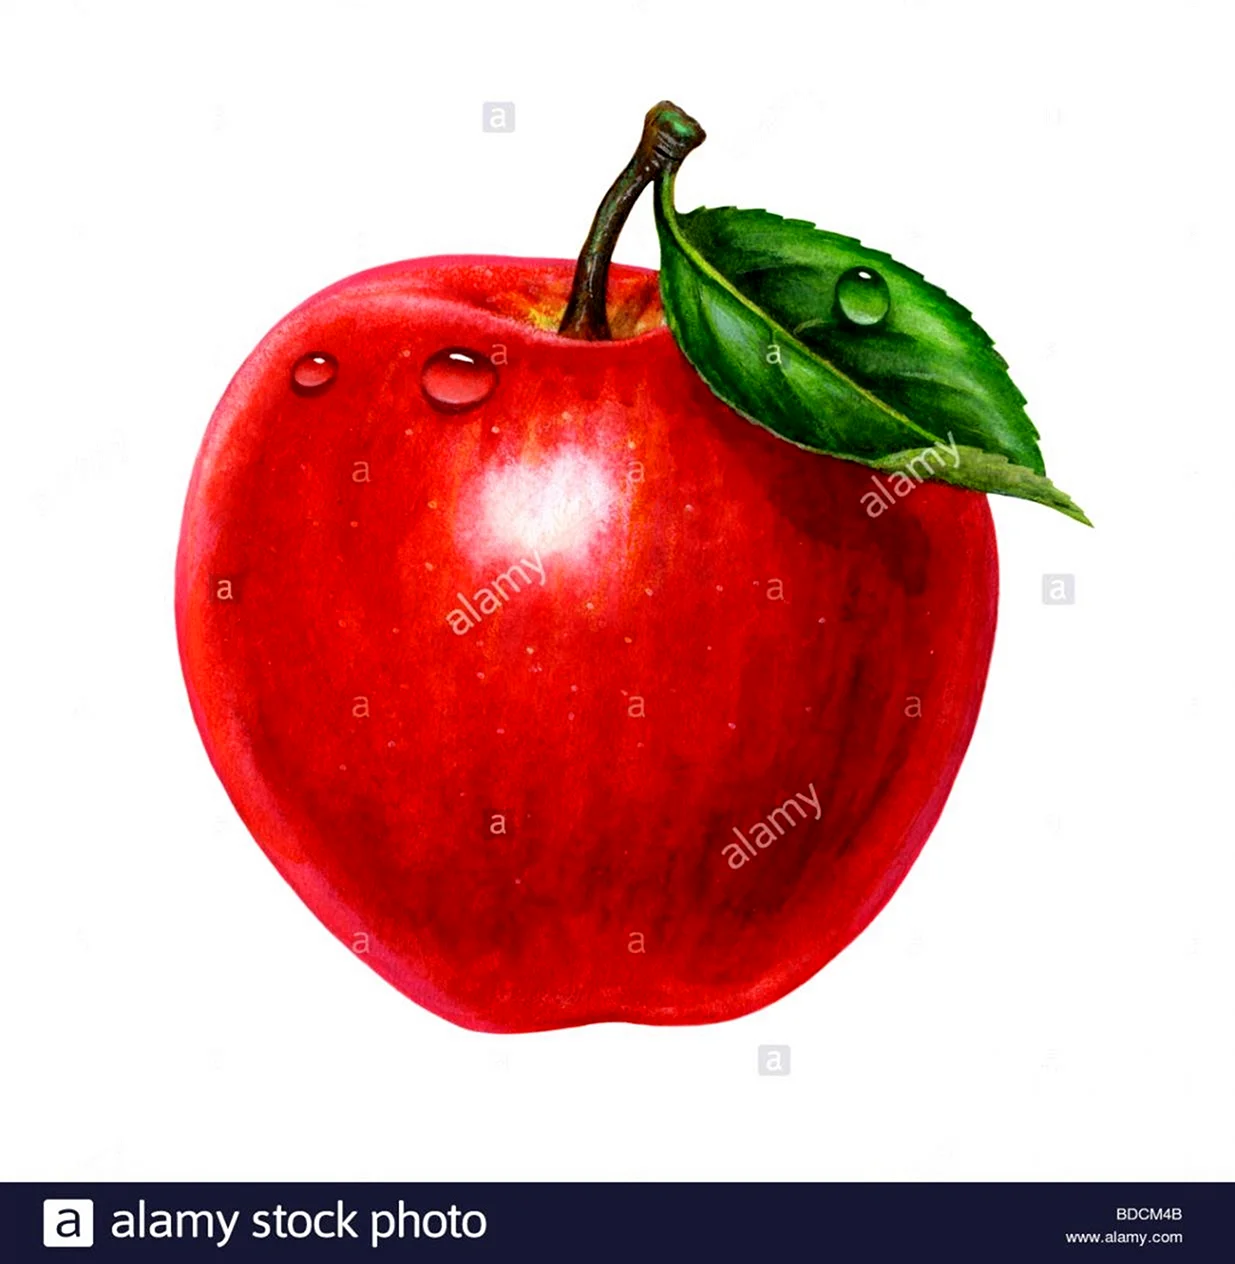 Яблоко для детей